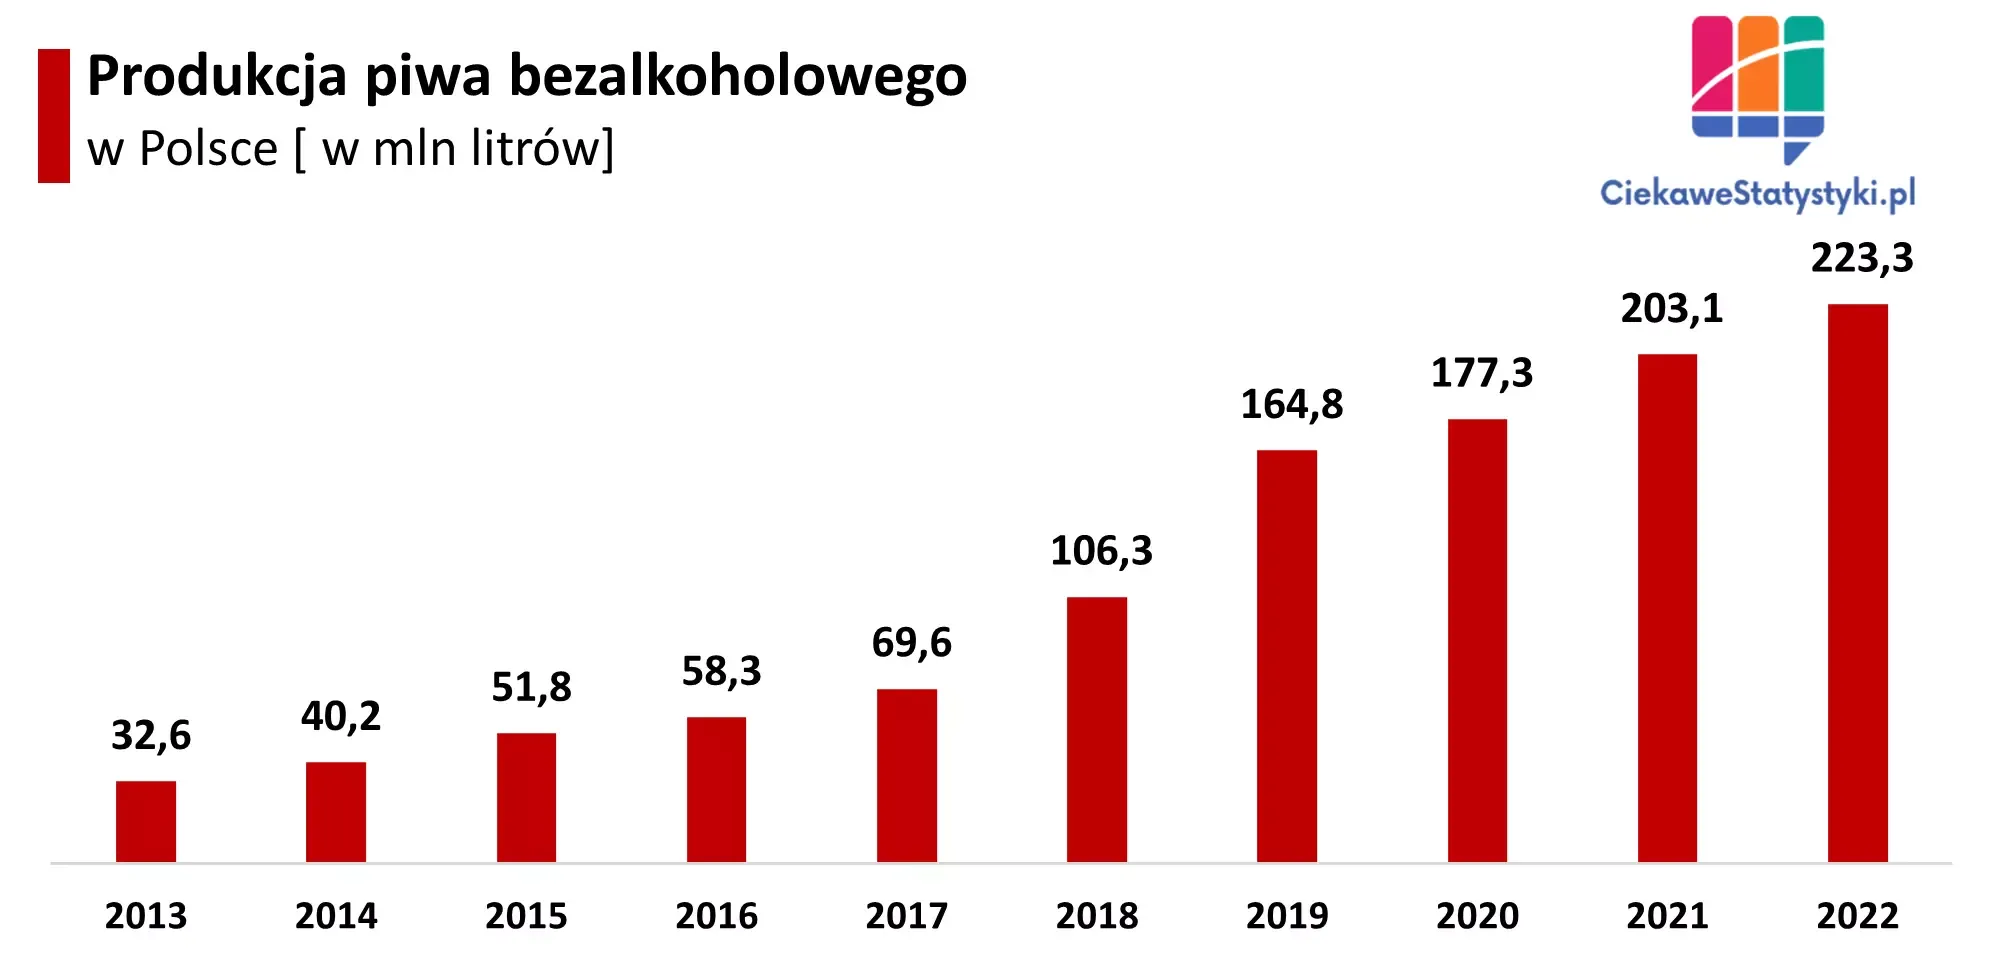 Wykres przedstawia produkcję piwa bezalkoholowego w Polsce na przestrzeni lat